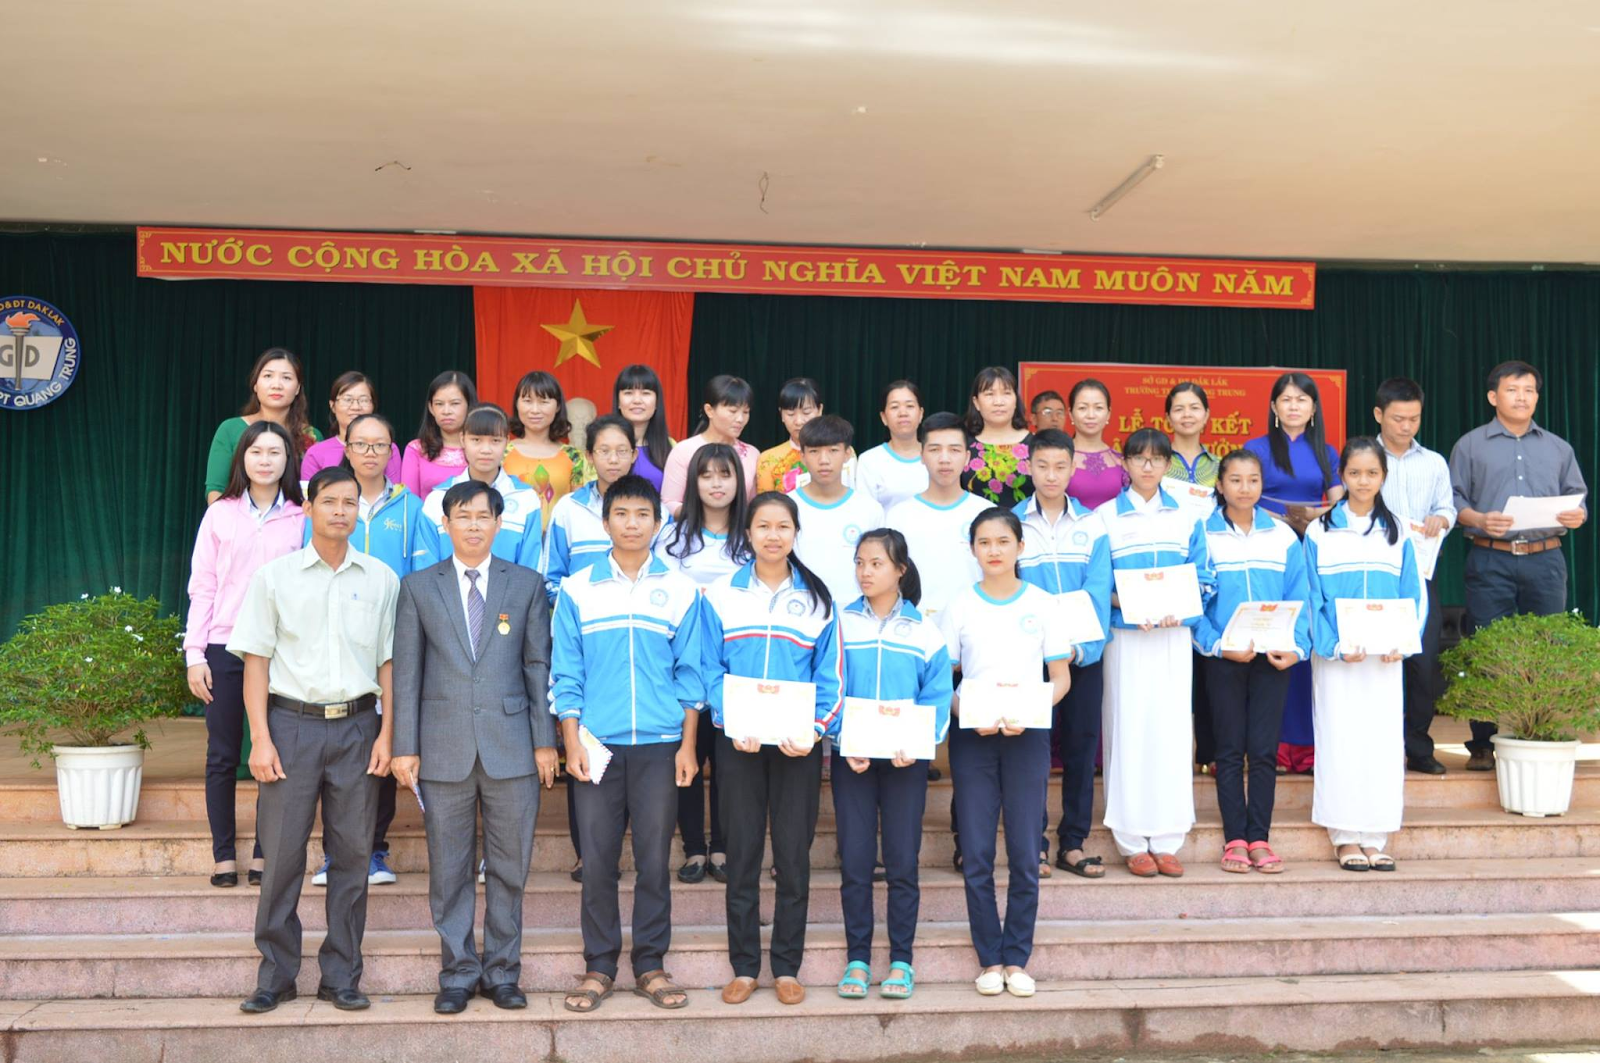  Đánh Giá Trường THPT Quang Trung Tỉnh Đắk Lắk Có Tốt Không